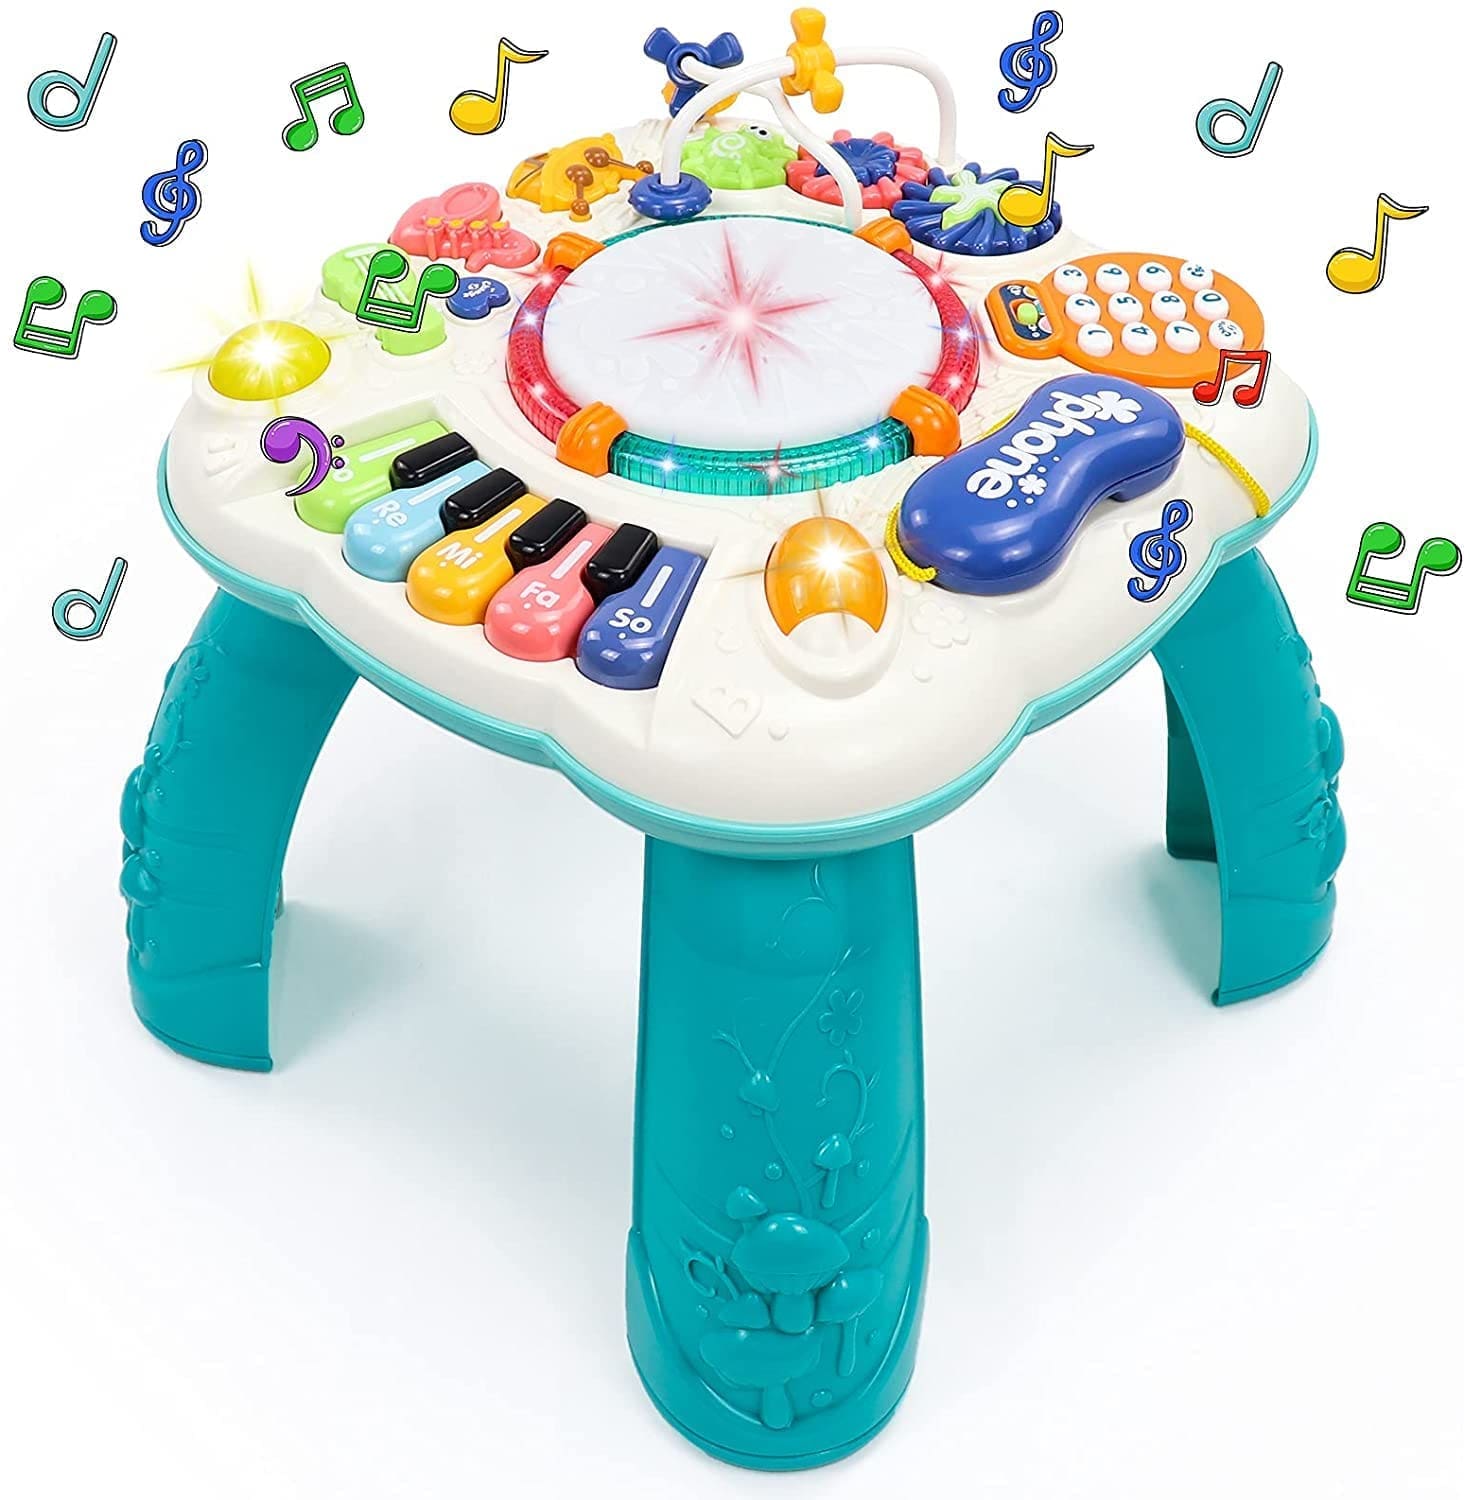 Fajiabao Mesa Actividades Bebe 6 en 1 - Juguetes Bebes 2 año Juguetes Niños  Montessori Bebe Educativos Bebes Instrumentos Musicales con Sonidos y Luces  Regalos para Niños Niñas 3 4 5 años